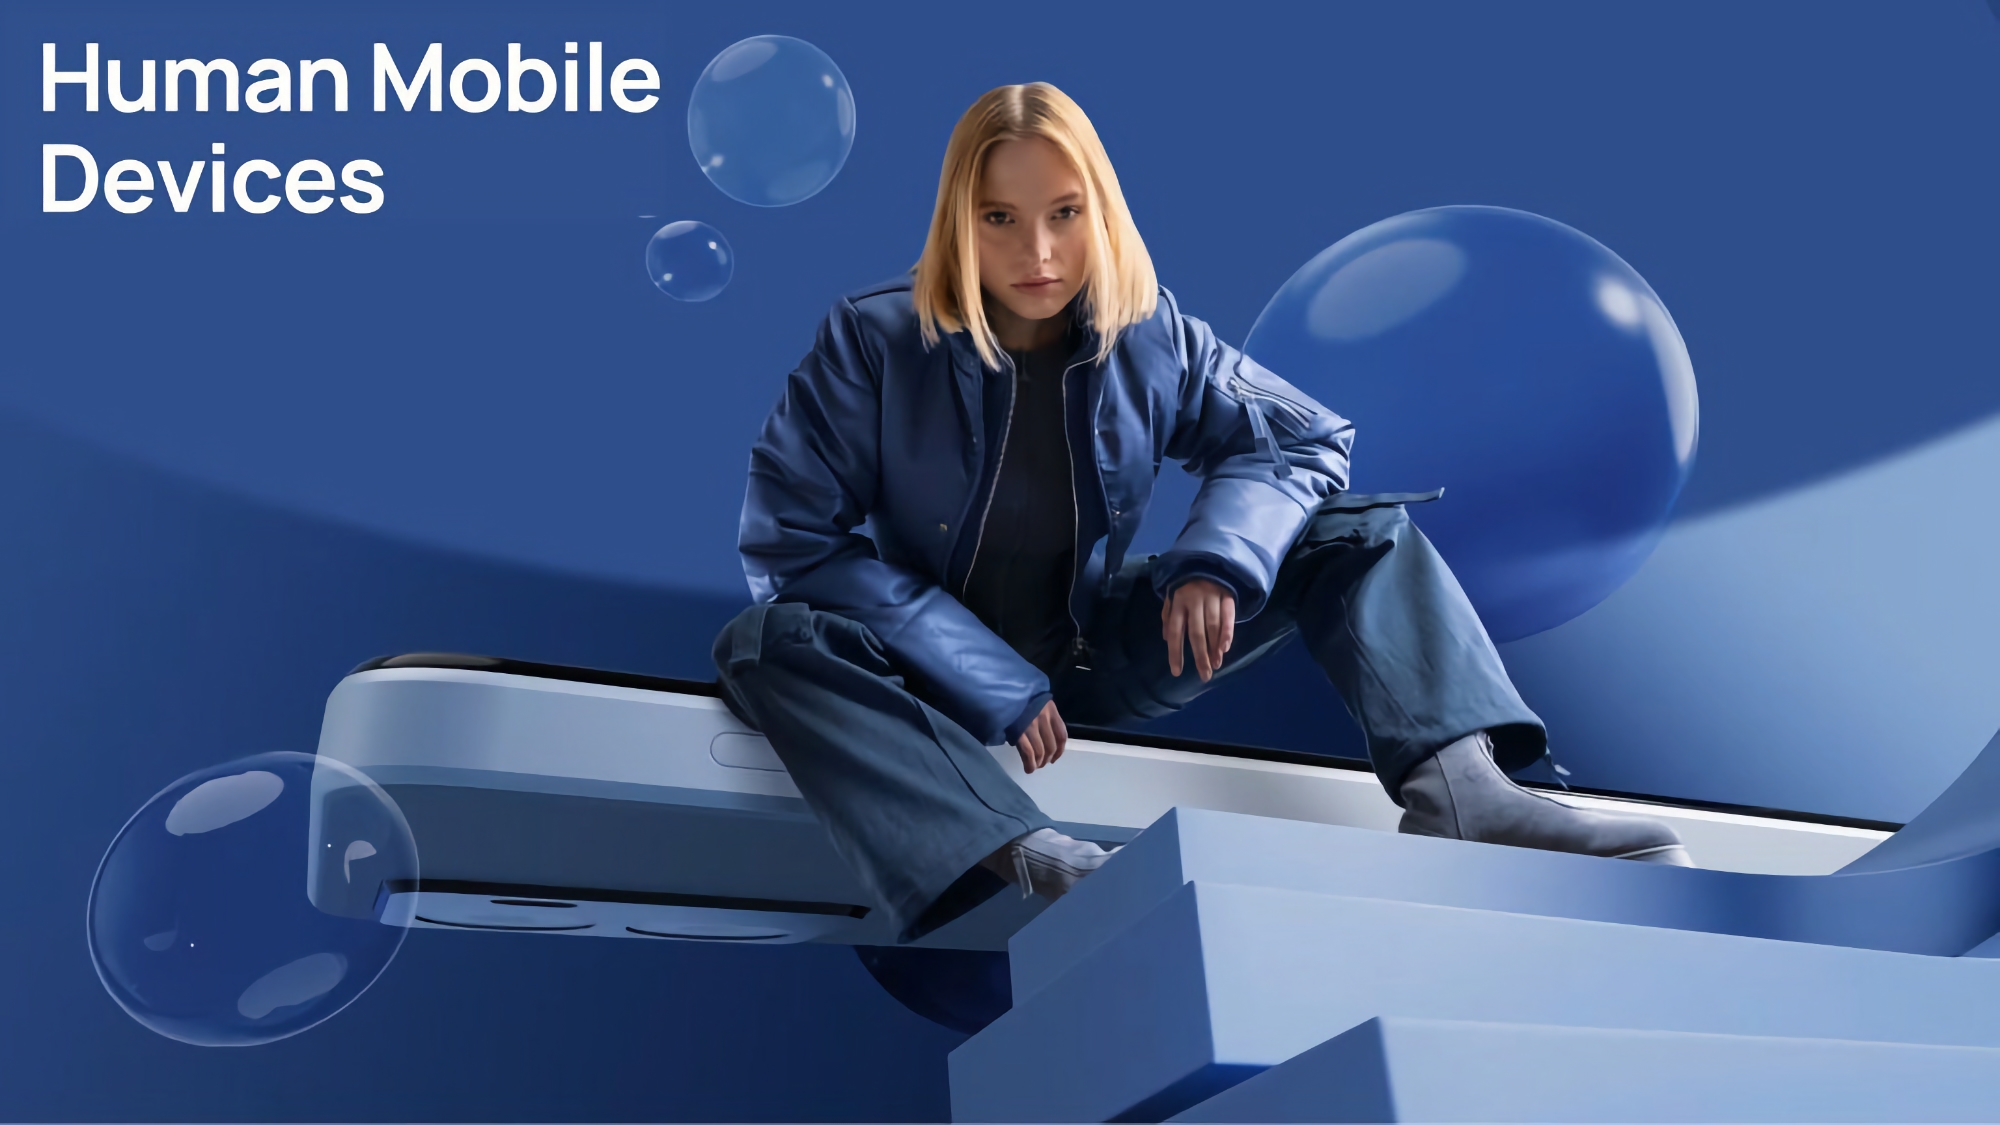 Adiós a Nokia: HMD Global dejará de fabricar smartphones con la mítica marca